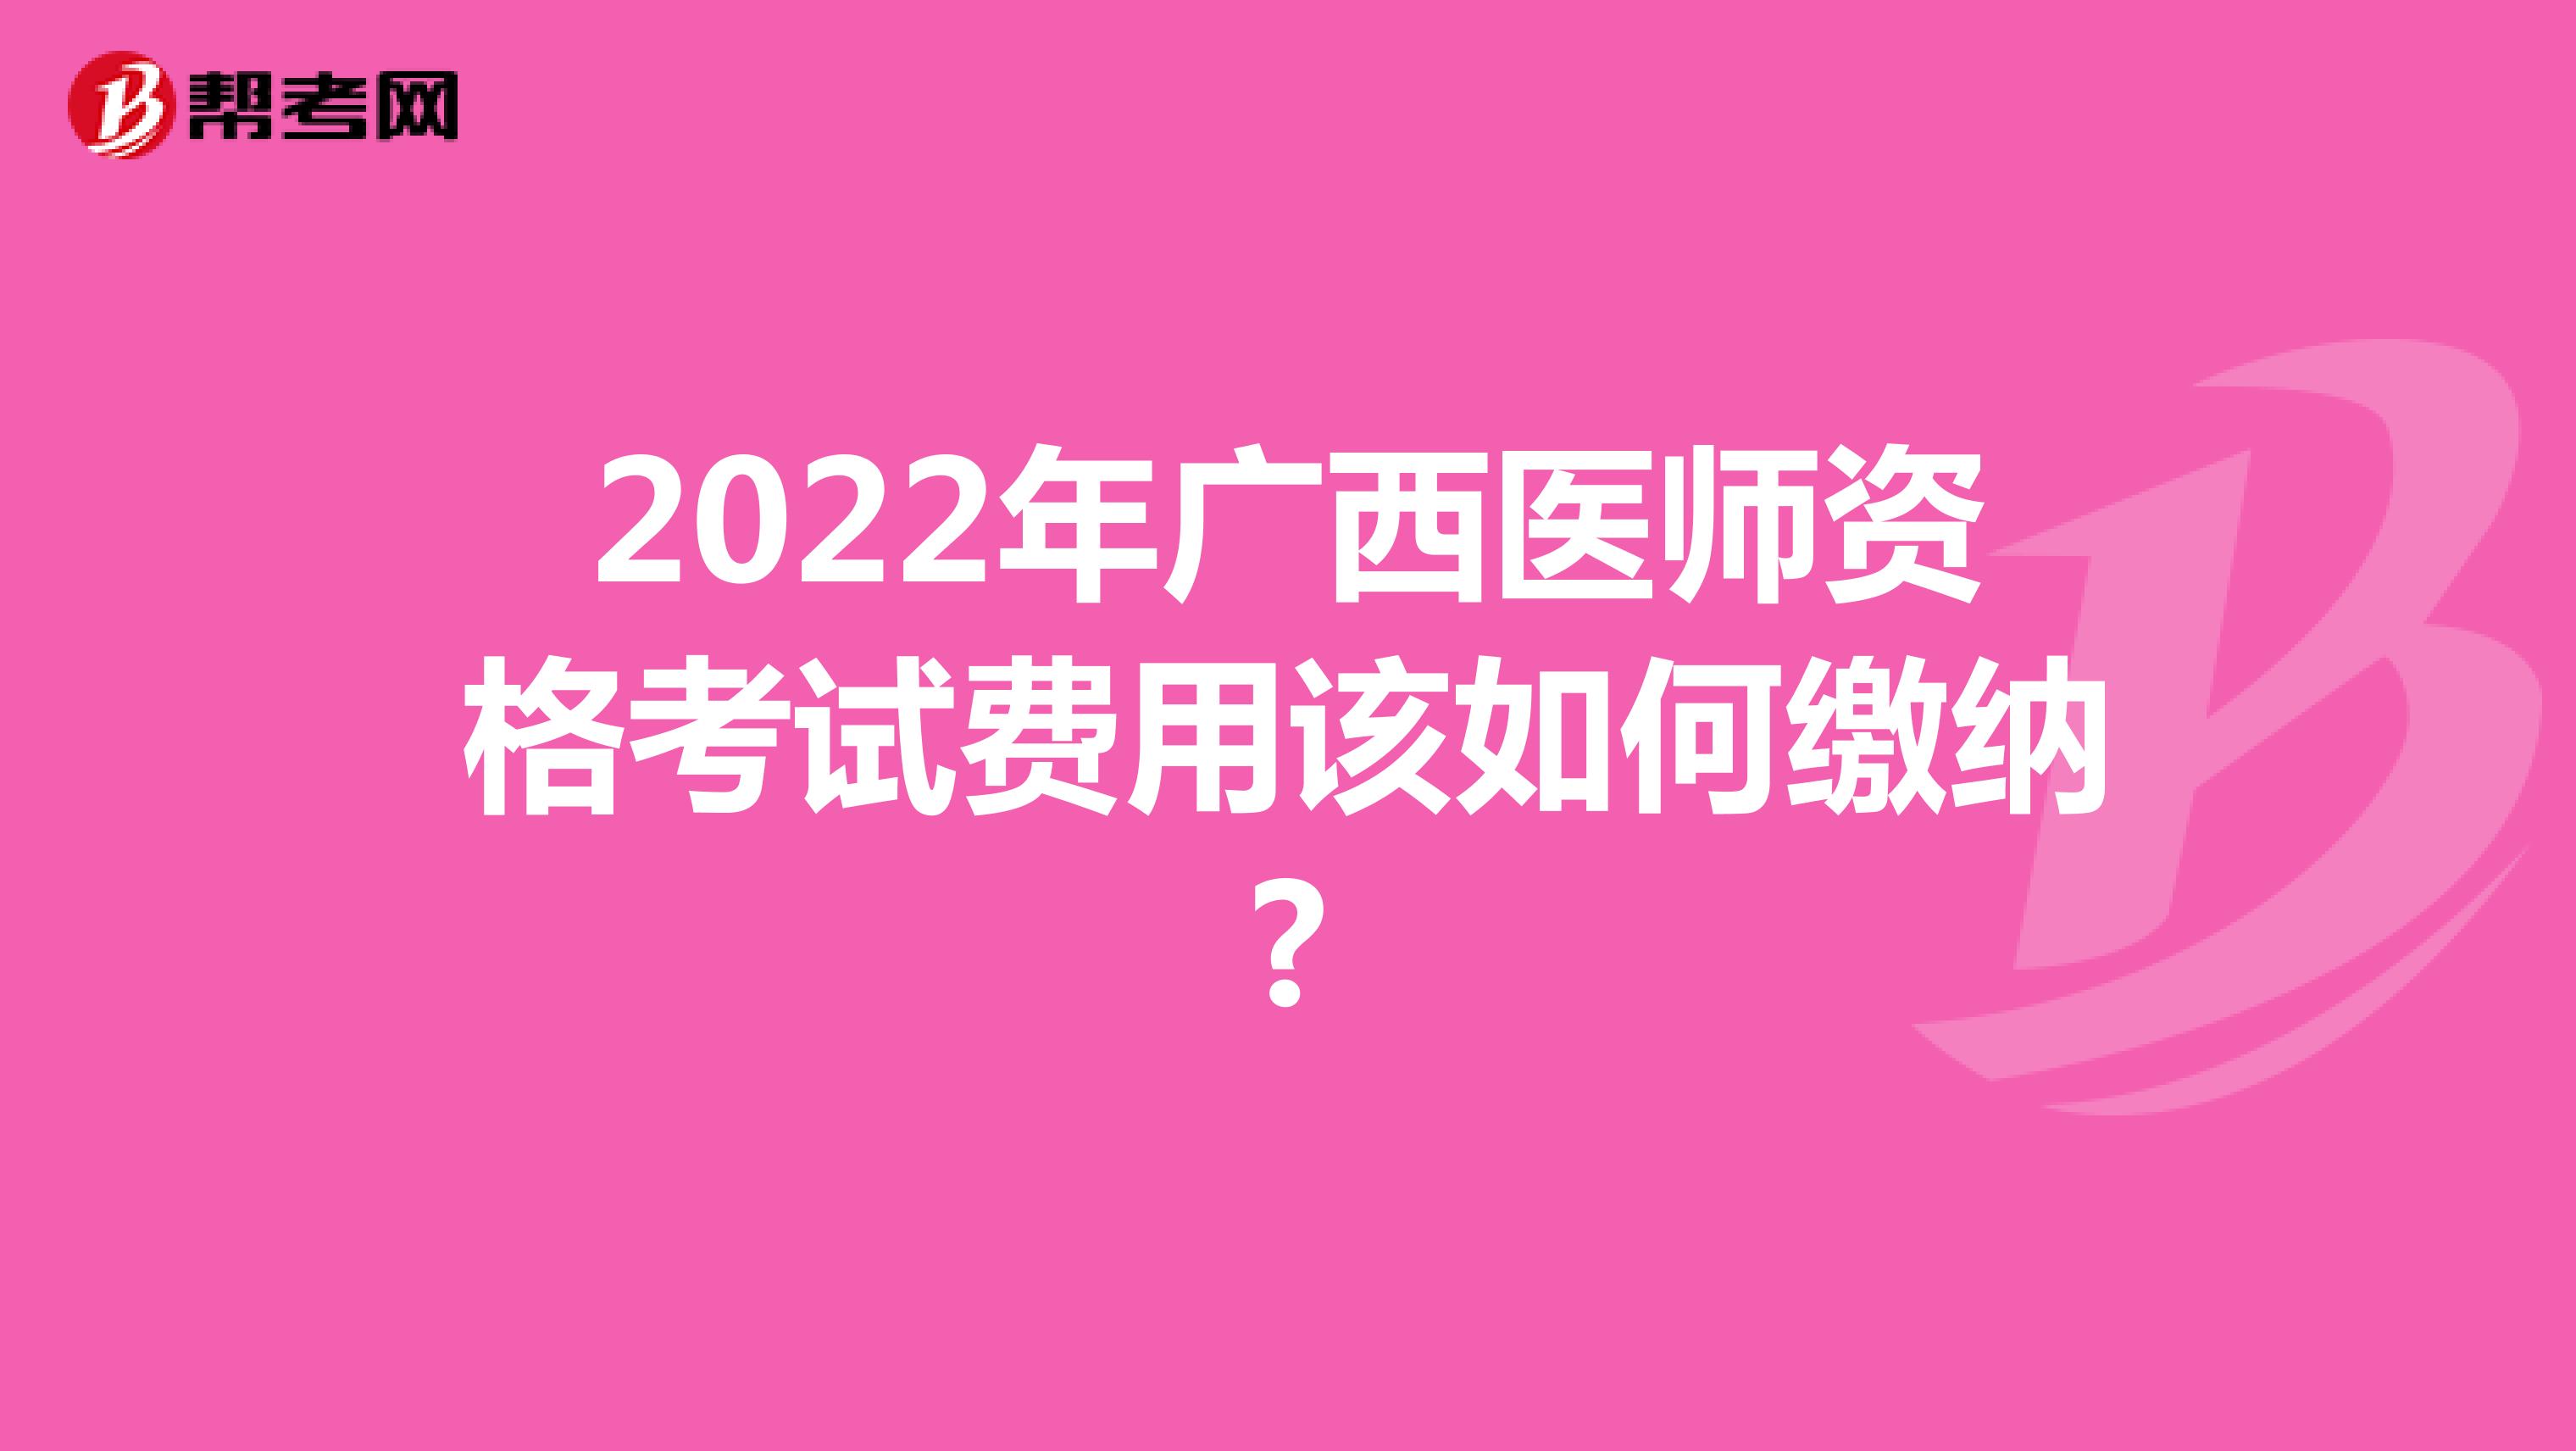 2022年广西医师资格考试费用该如何缴纳?